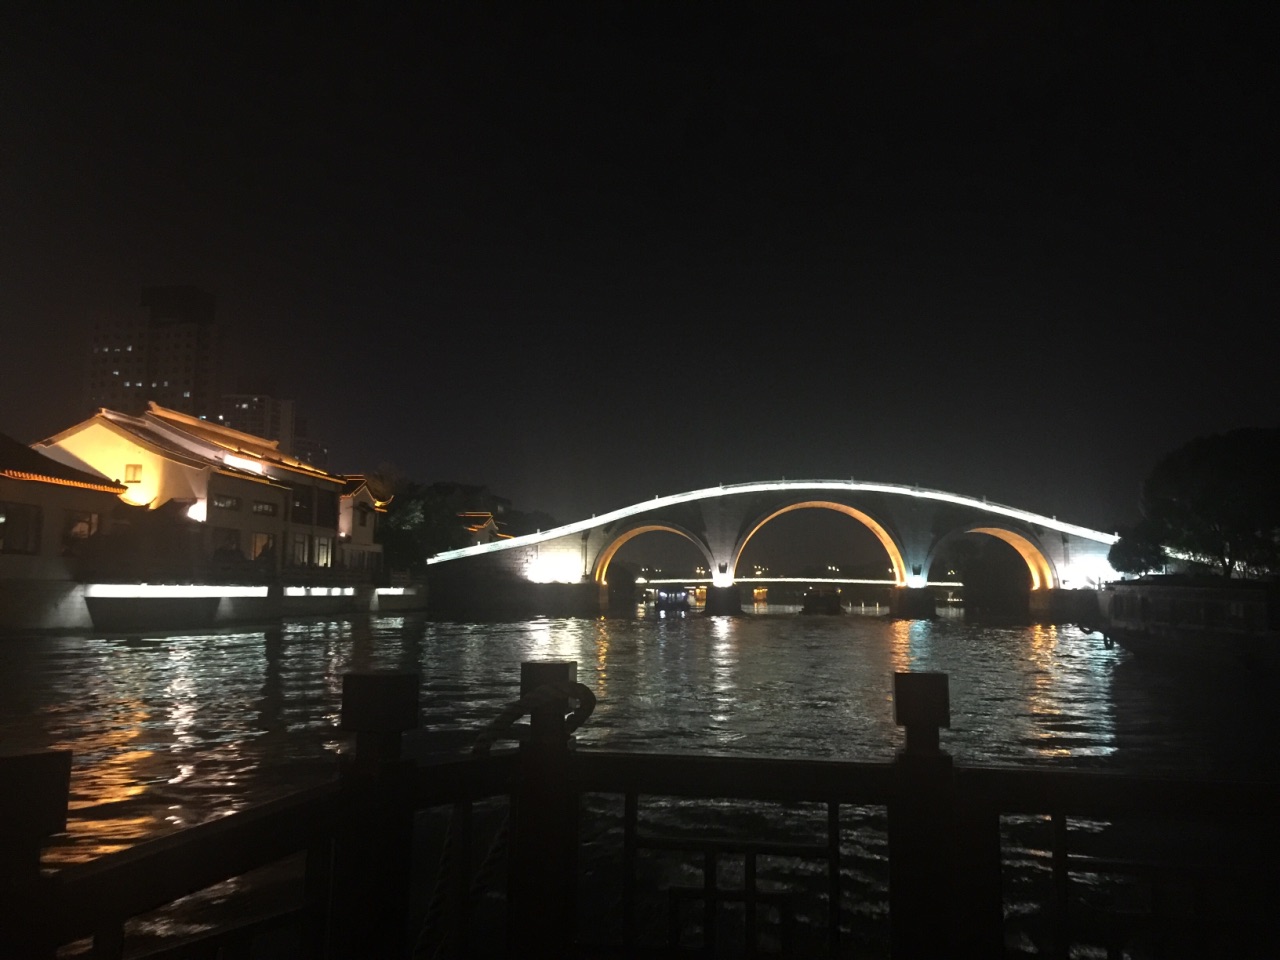 【携程攻略】苏州新市桥堍古运河旅游码头景点,票价非常实惠,比售票点